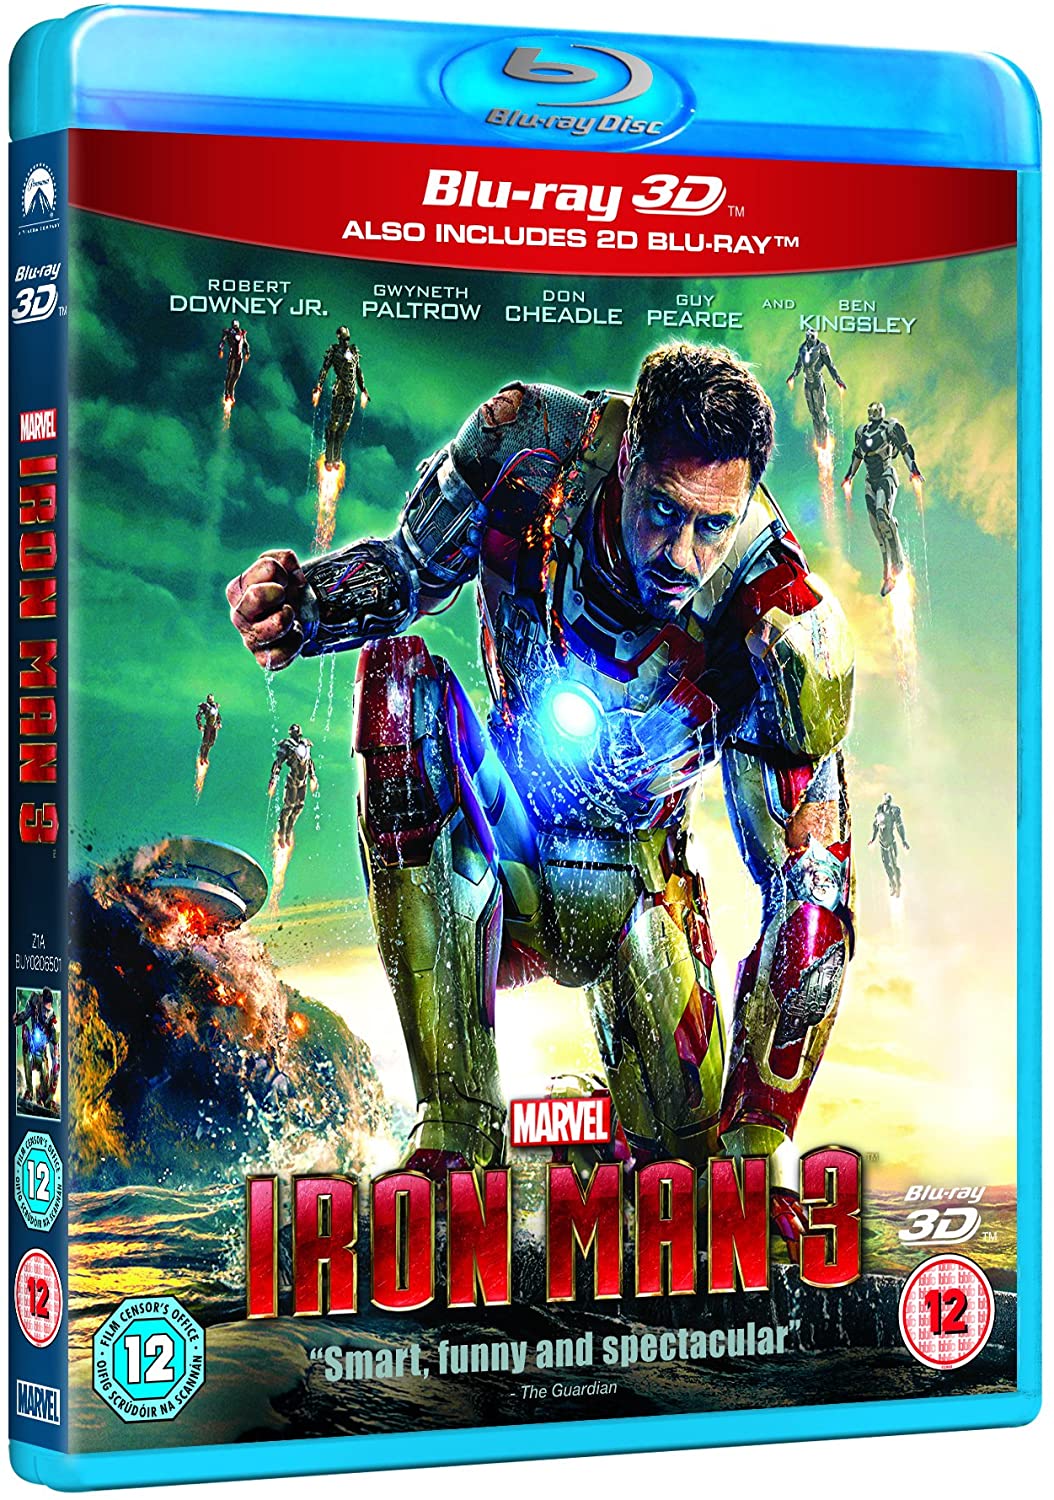 Iron Man 3 [Blu-ray 3D + Blu-ray] [Région gratuite]